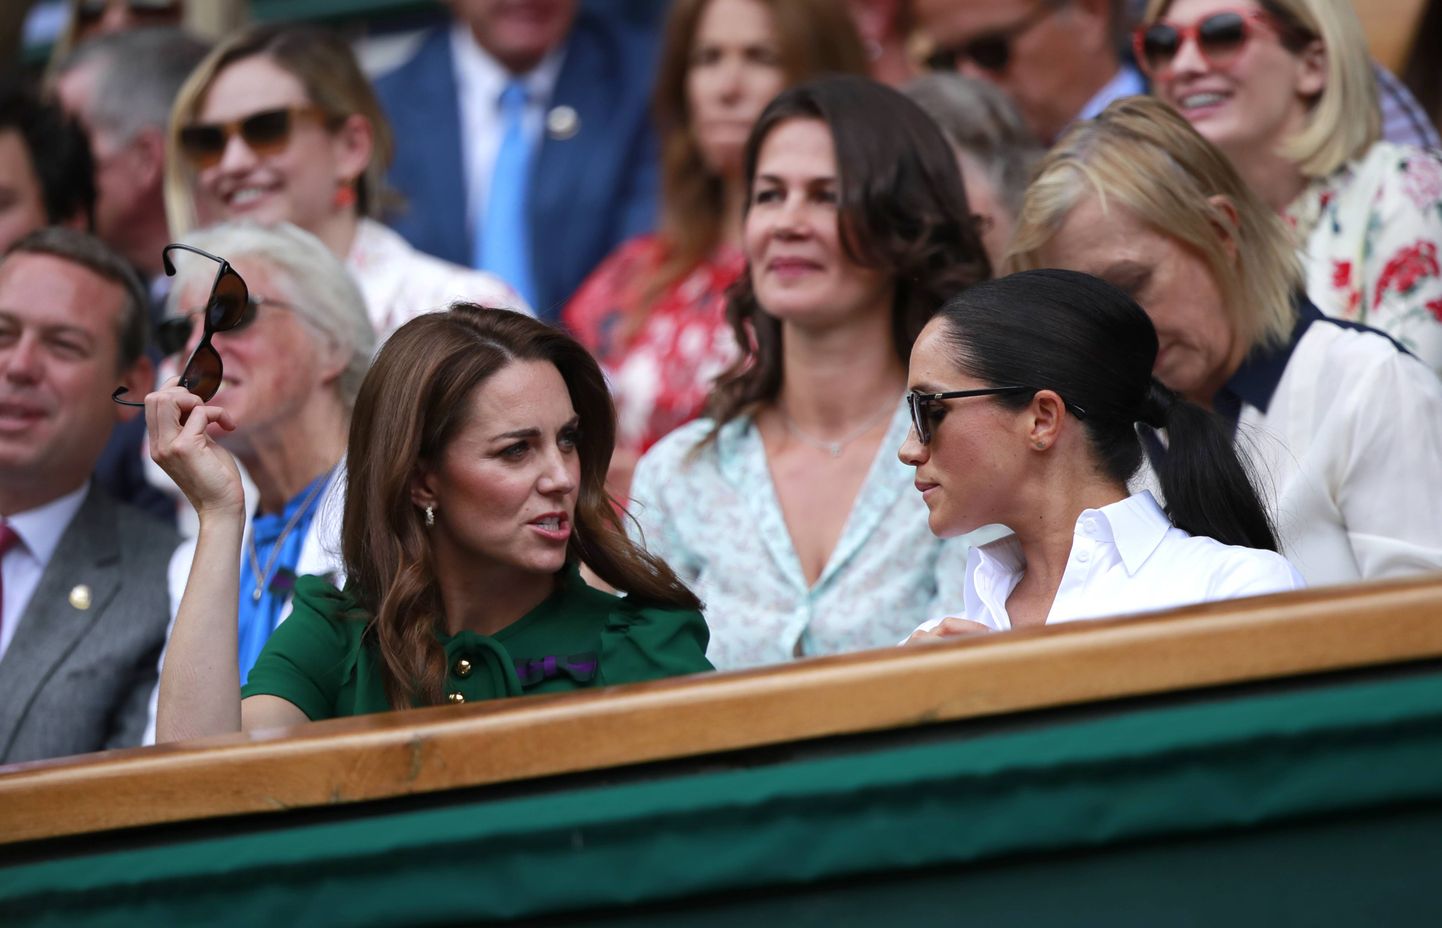 Üks väheseid üritusi, kus Kate Middleton ja Meghan Markle koos viibinud. Foto on tehtud 13. juulil 2019. aastal.